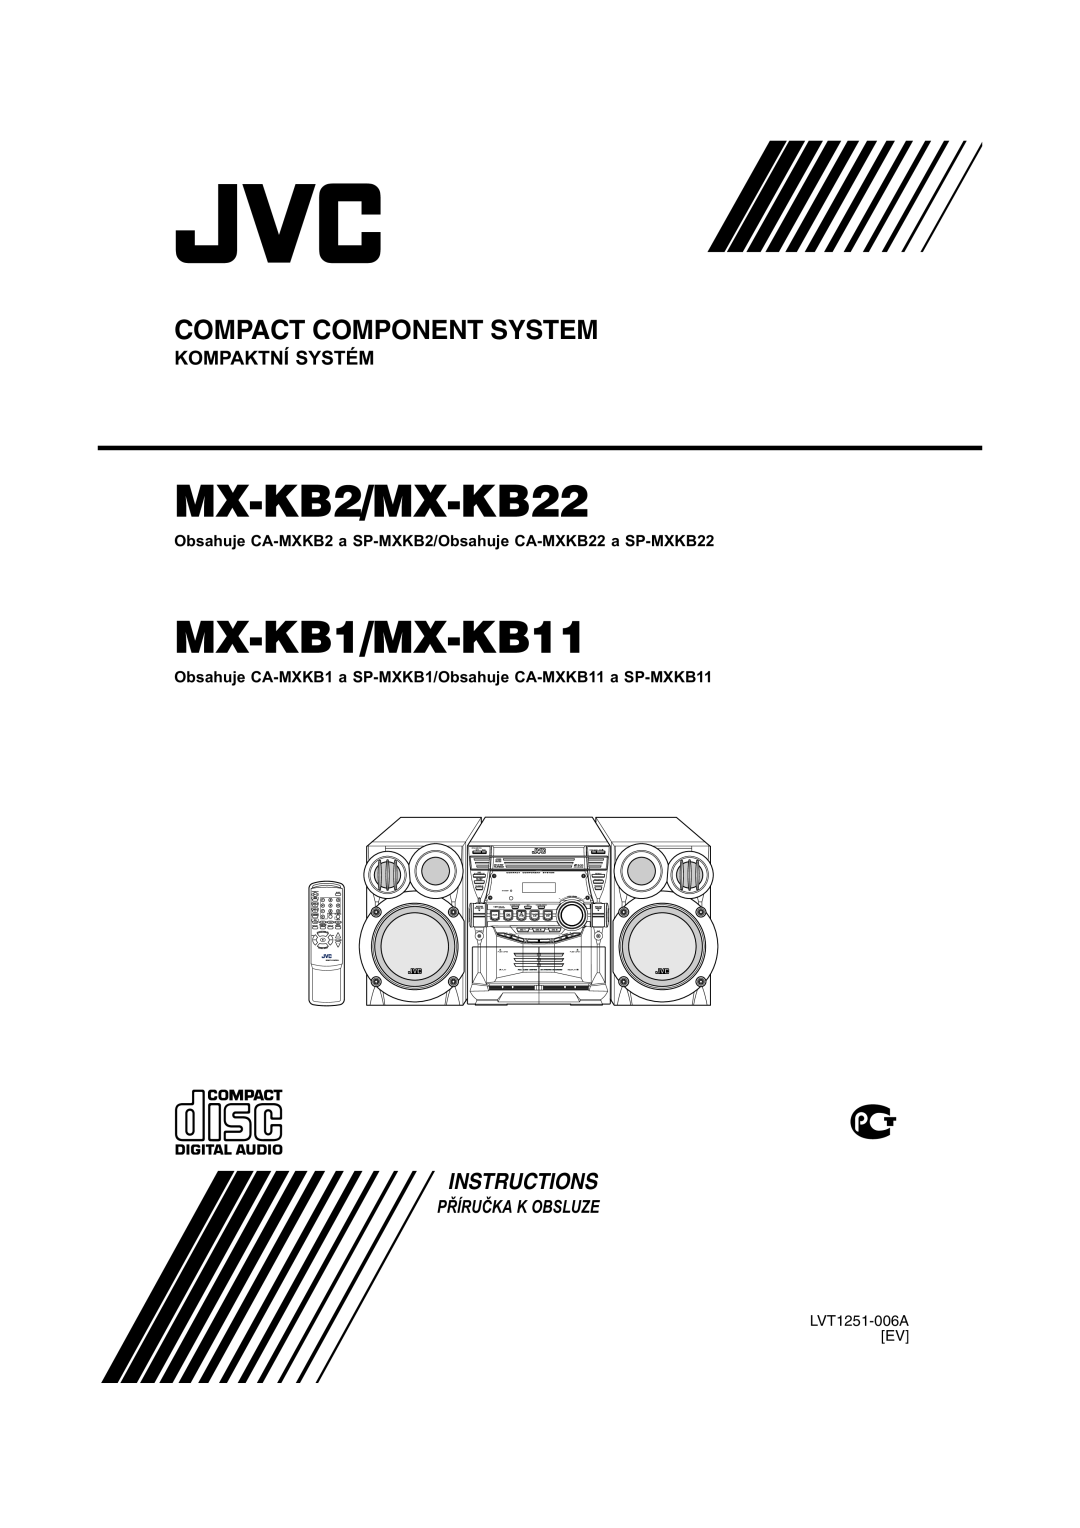 JVC manual PŘĺRUČKA K OBSLUZE, MX-KB2/MX-KB22, MX-KB1/MX-KB11, Compact Component System, Instructions, Kompaktní Systém 